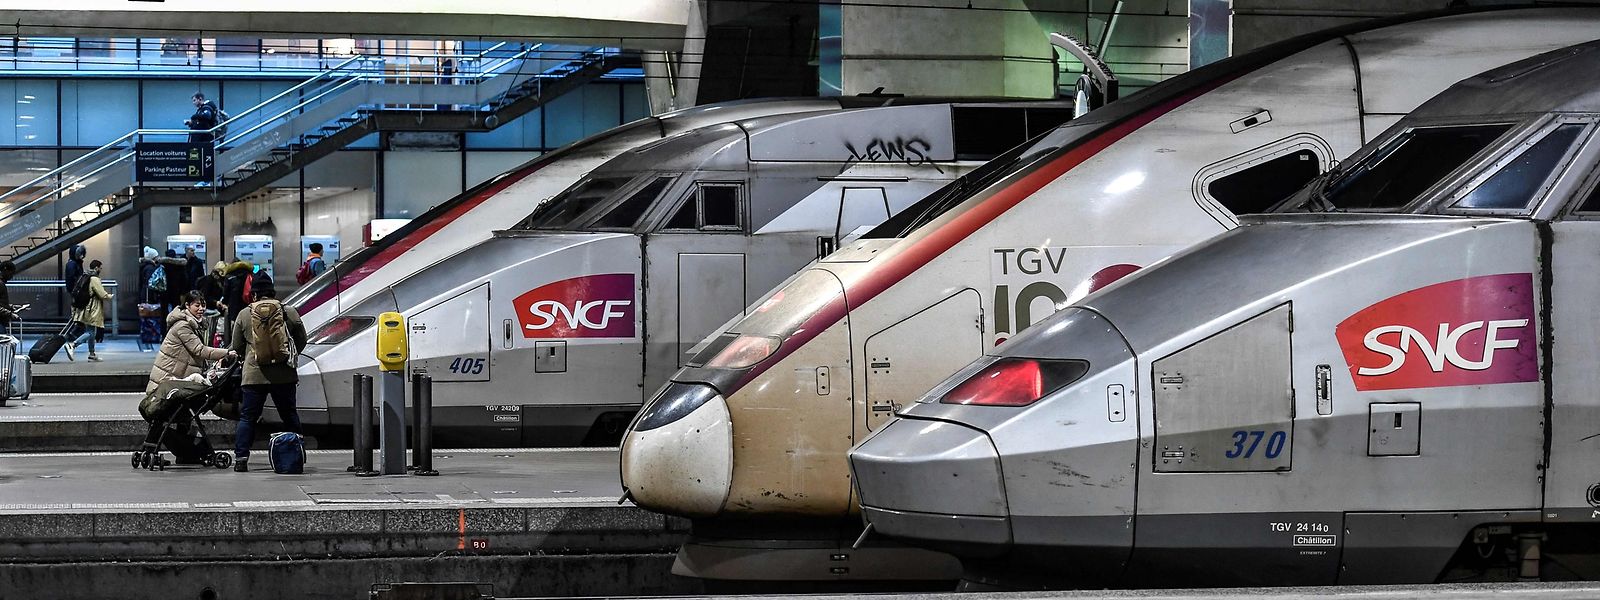 Le changement ne vaudra que pour cette fin de semaine, assure la SNCF.